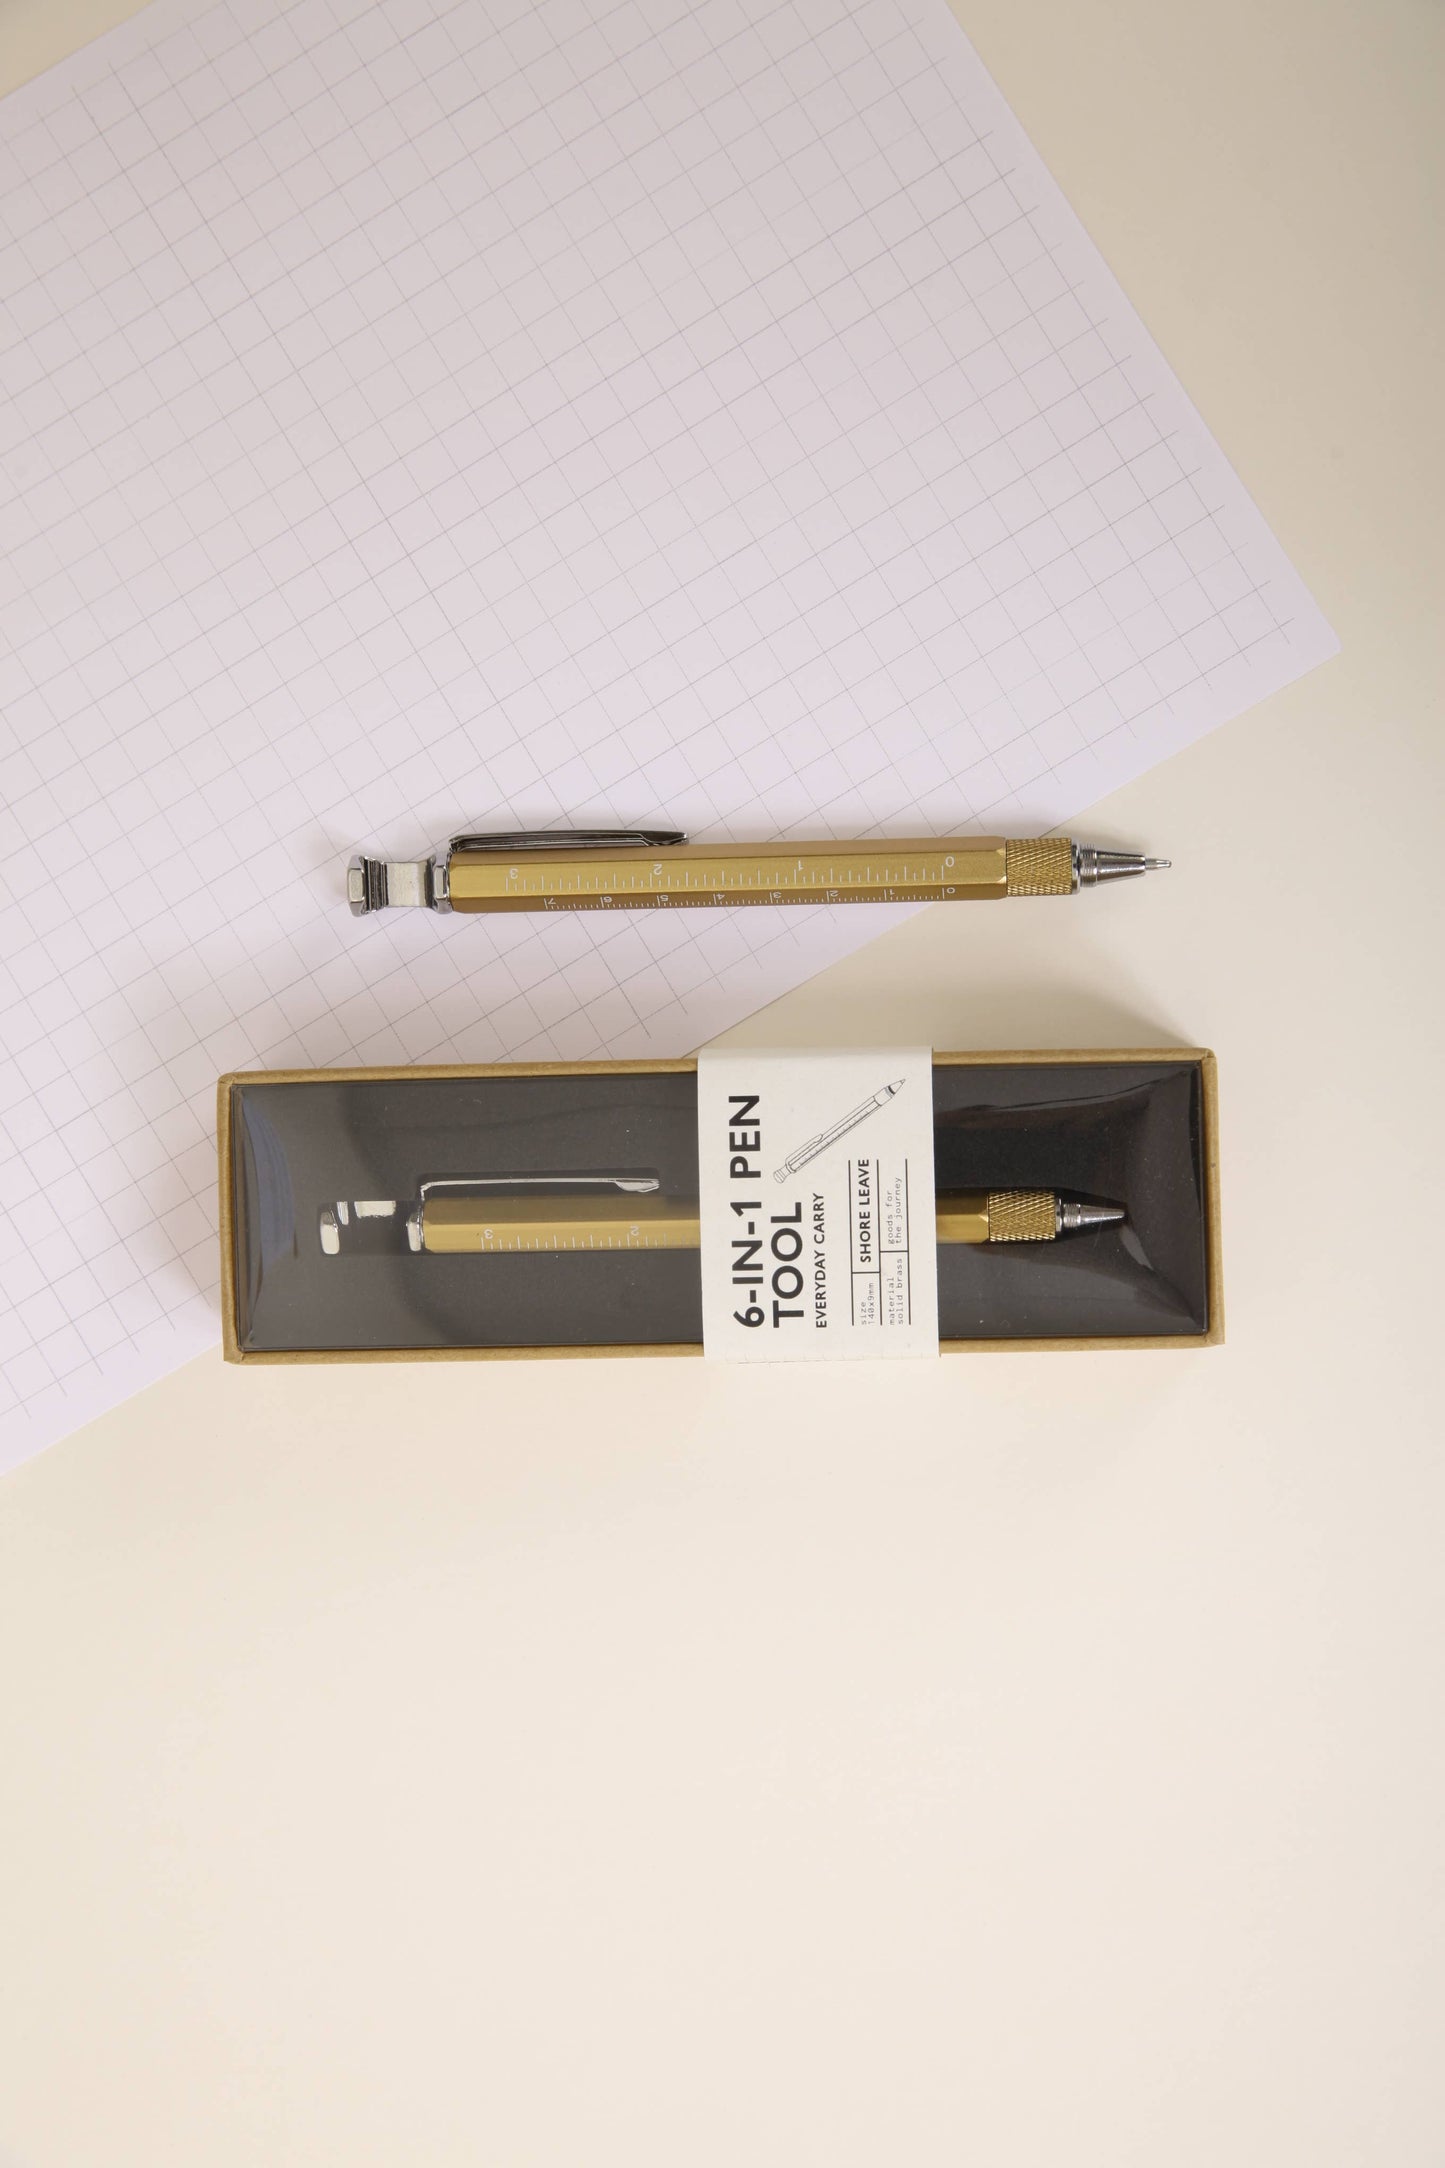 6-in-1 Pen Tool